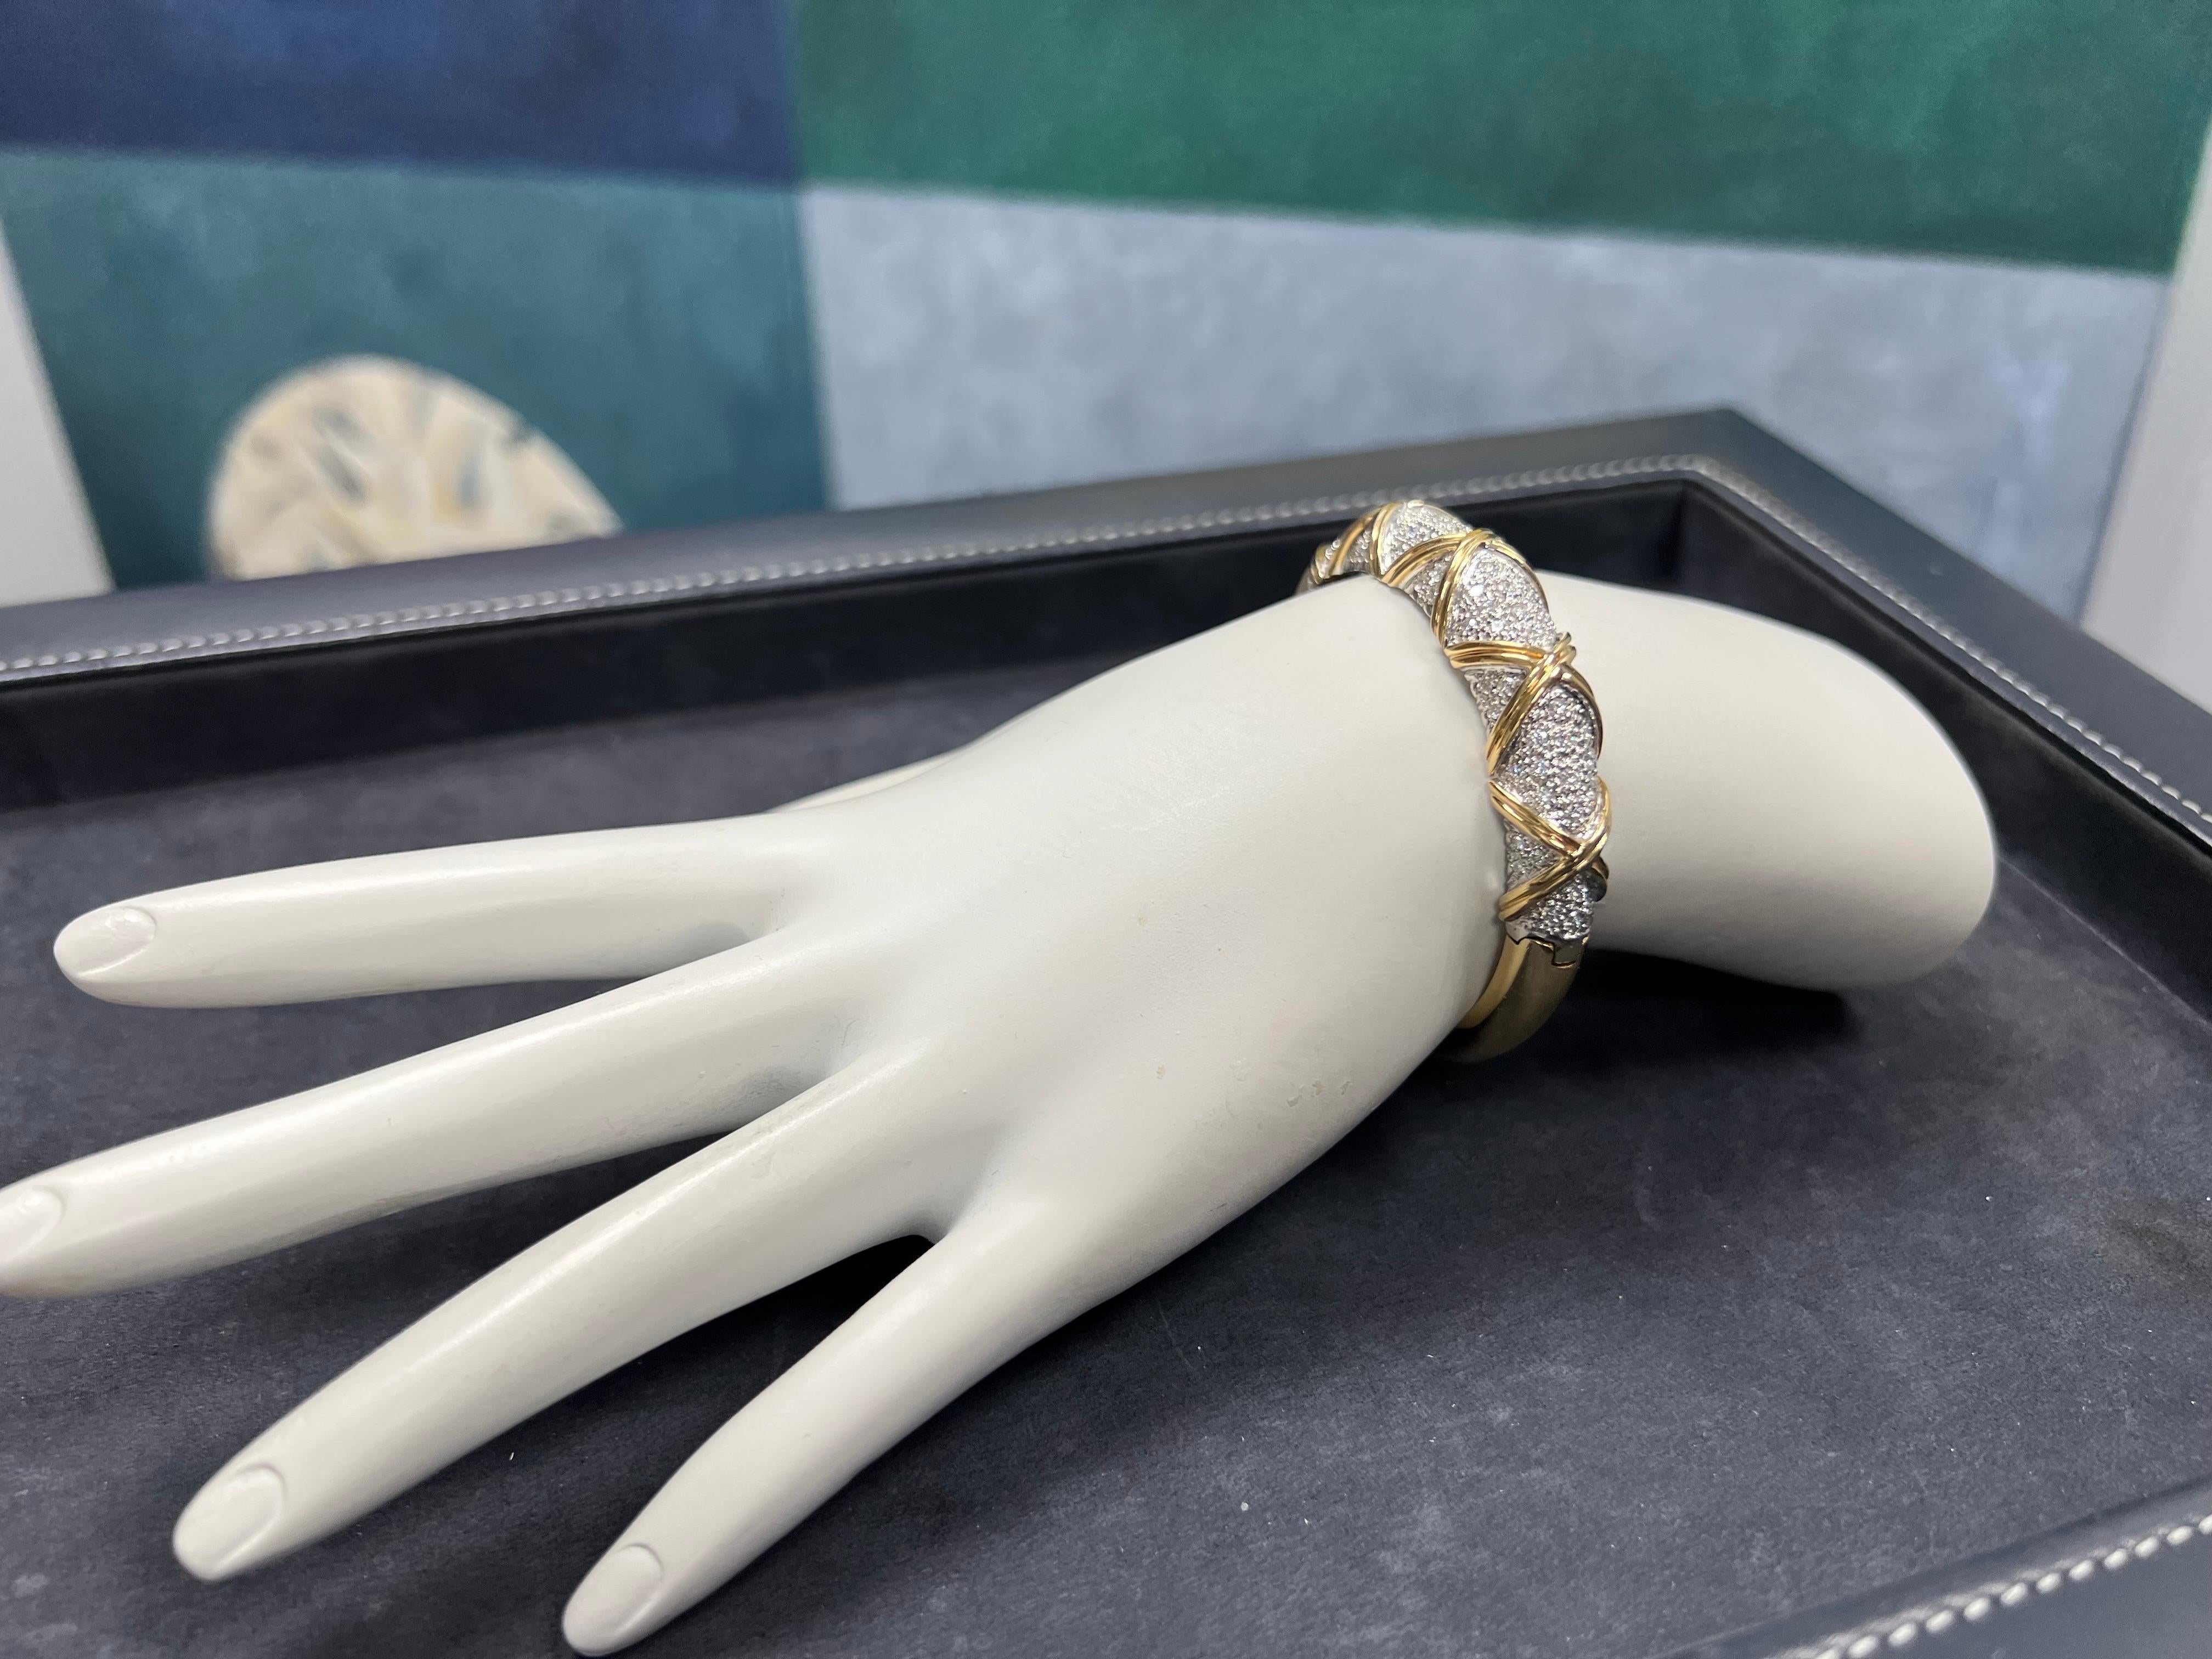 
Un magnifique bracelet rigide en diamant incolore de 2,50 carats de couleur naturelle. La pièce est montée en or jaune 18k et est sertie de 104 diamants ronds de taille brillant, de couleur E-F et de pureté VS-VVS. 

La pièce pèse 35,8 grammes au